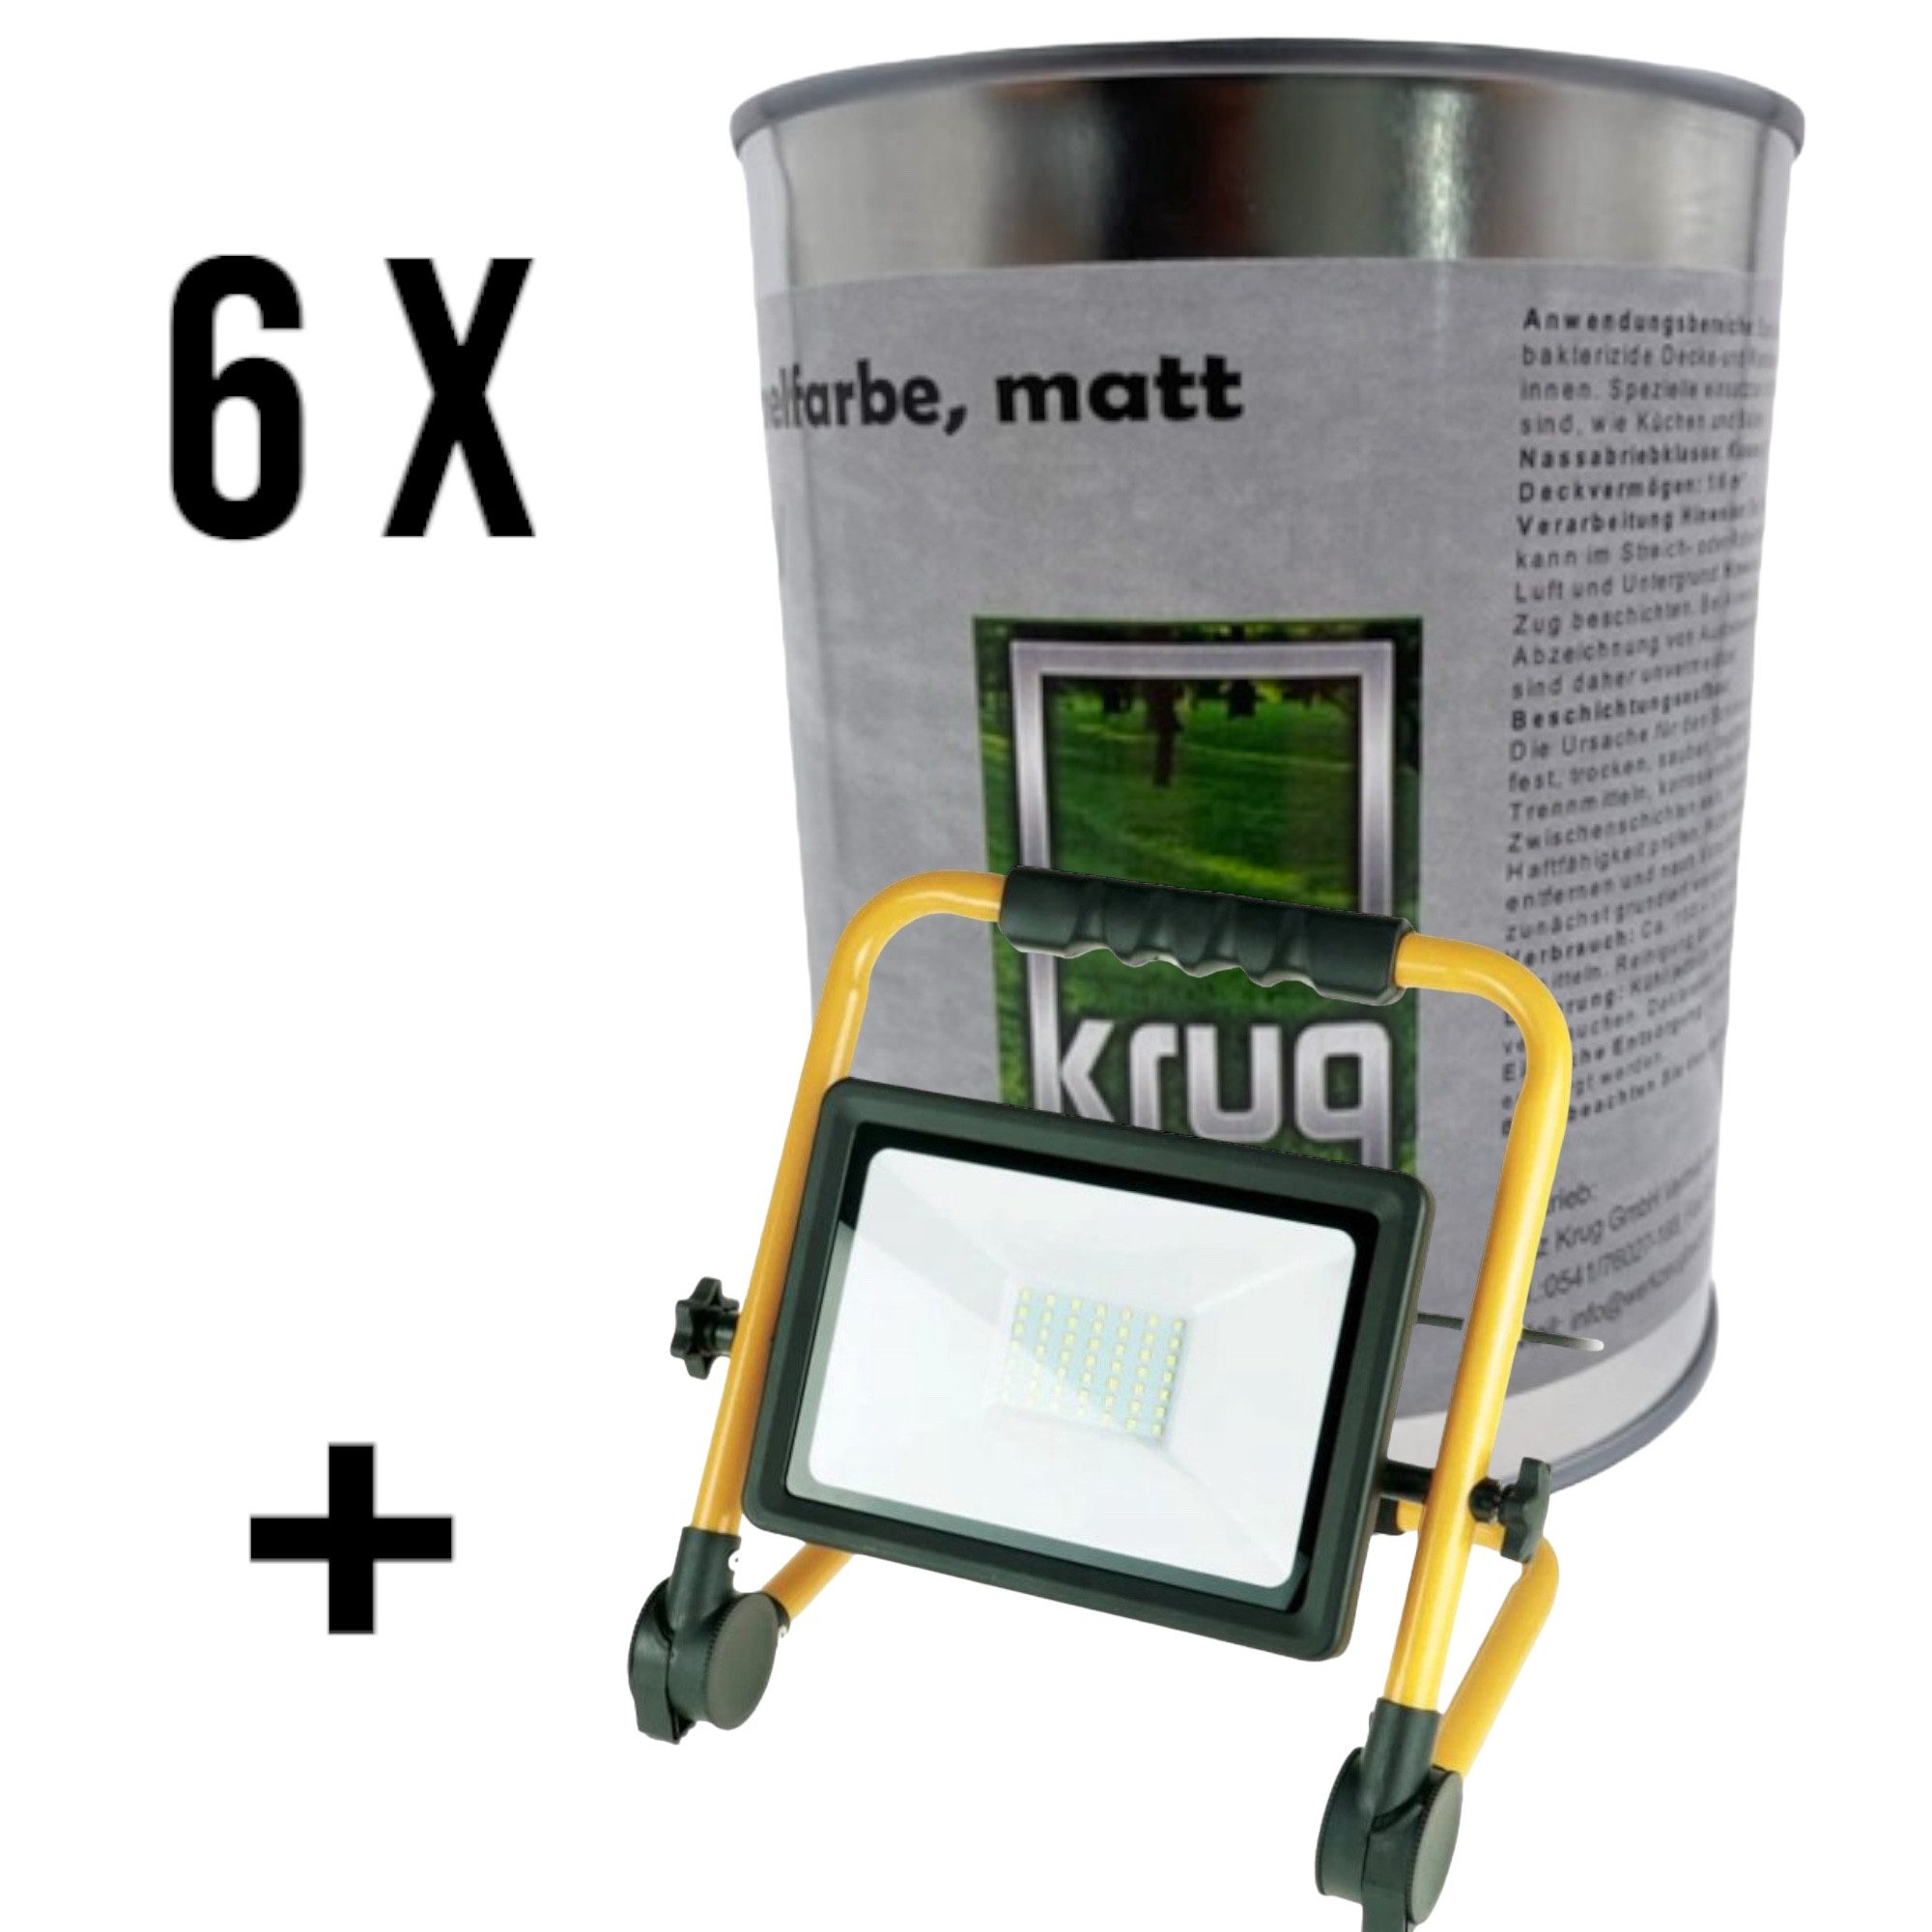 Fritz Krug Feuchtraumfarbe Set 6 x Krug Antischimmelfarbe Matt 0,75 Liter + 1 x SMD LED Baustrah